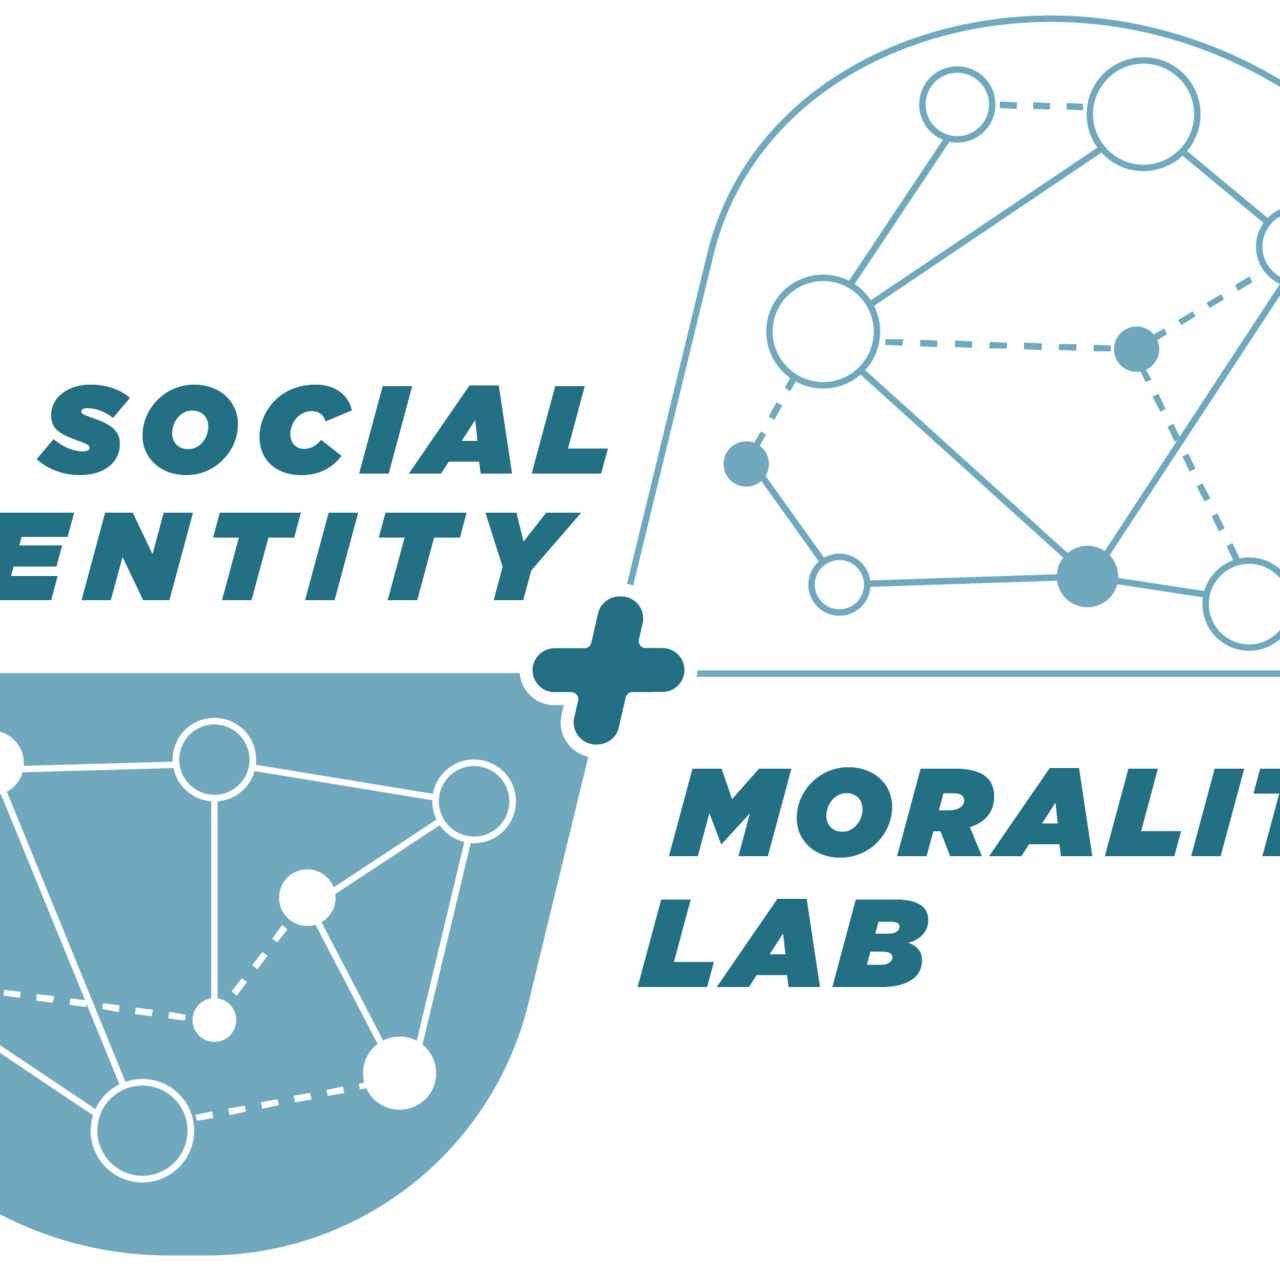 Bí quyết Xây dựng Social Entity để Nâng cao Xếp hạng SEO